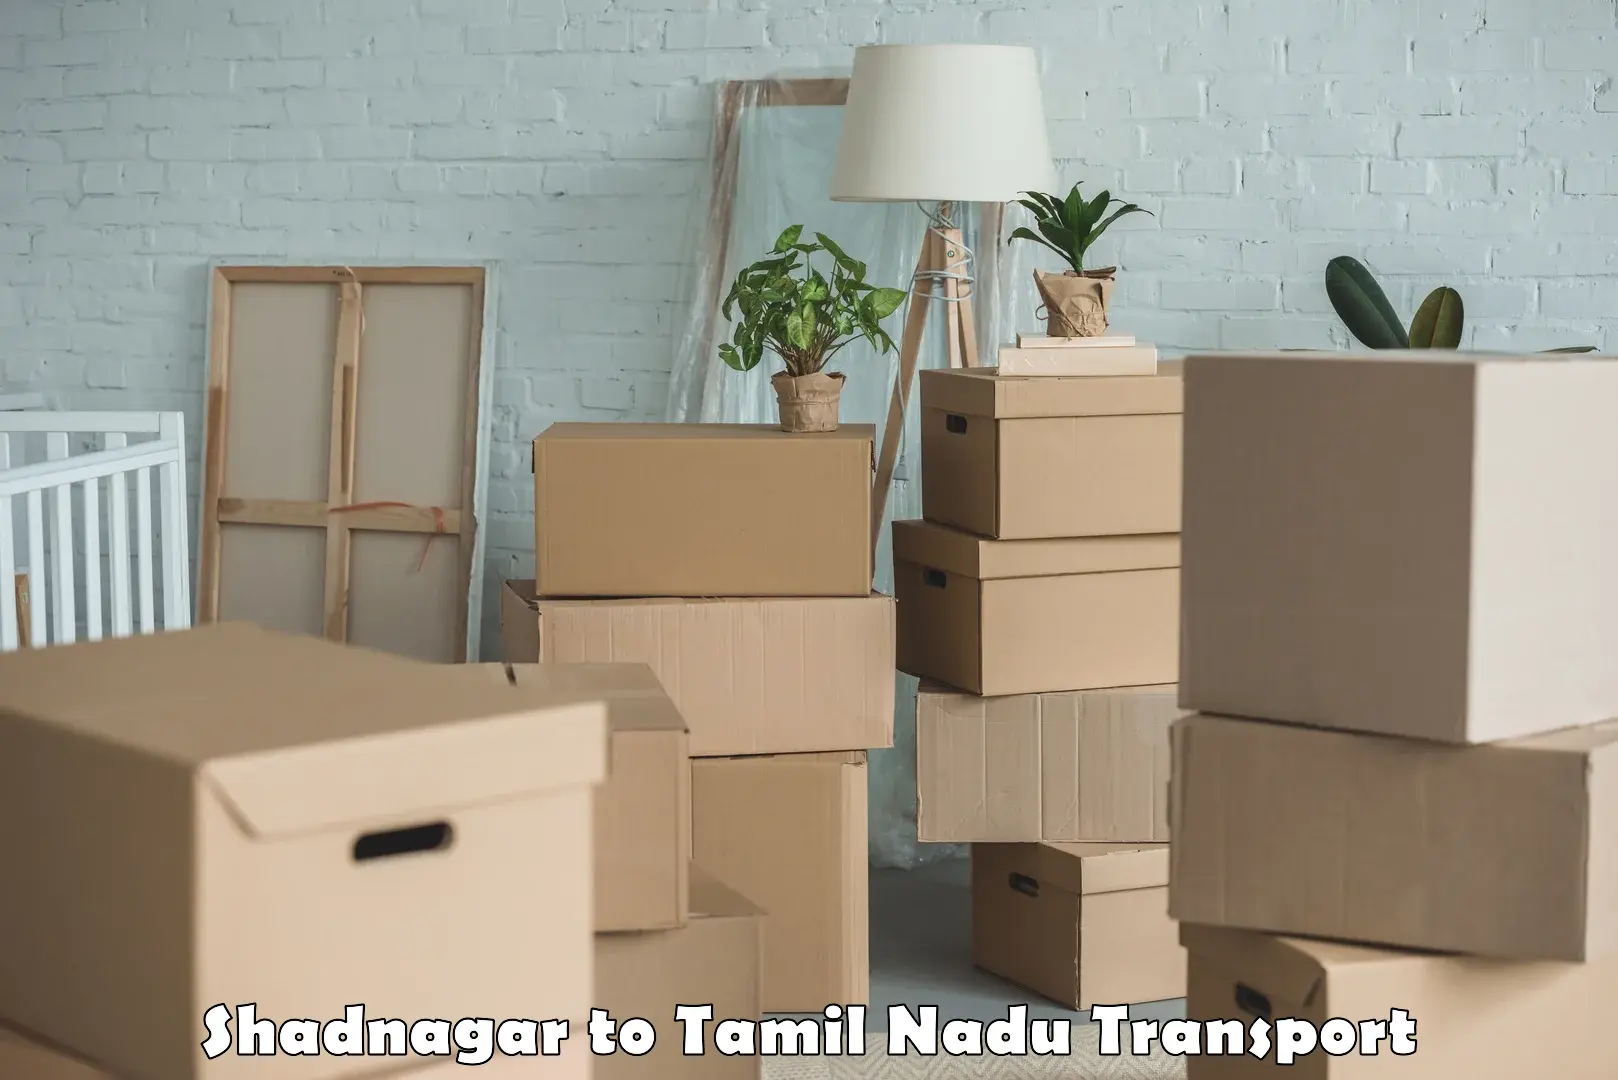 Commercial transport service Shadnagar to Tamil Nadu